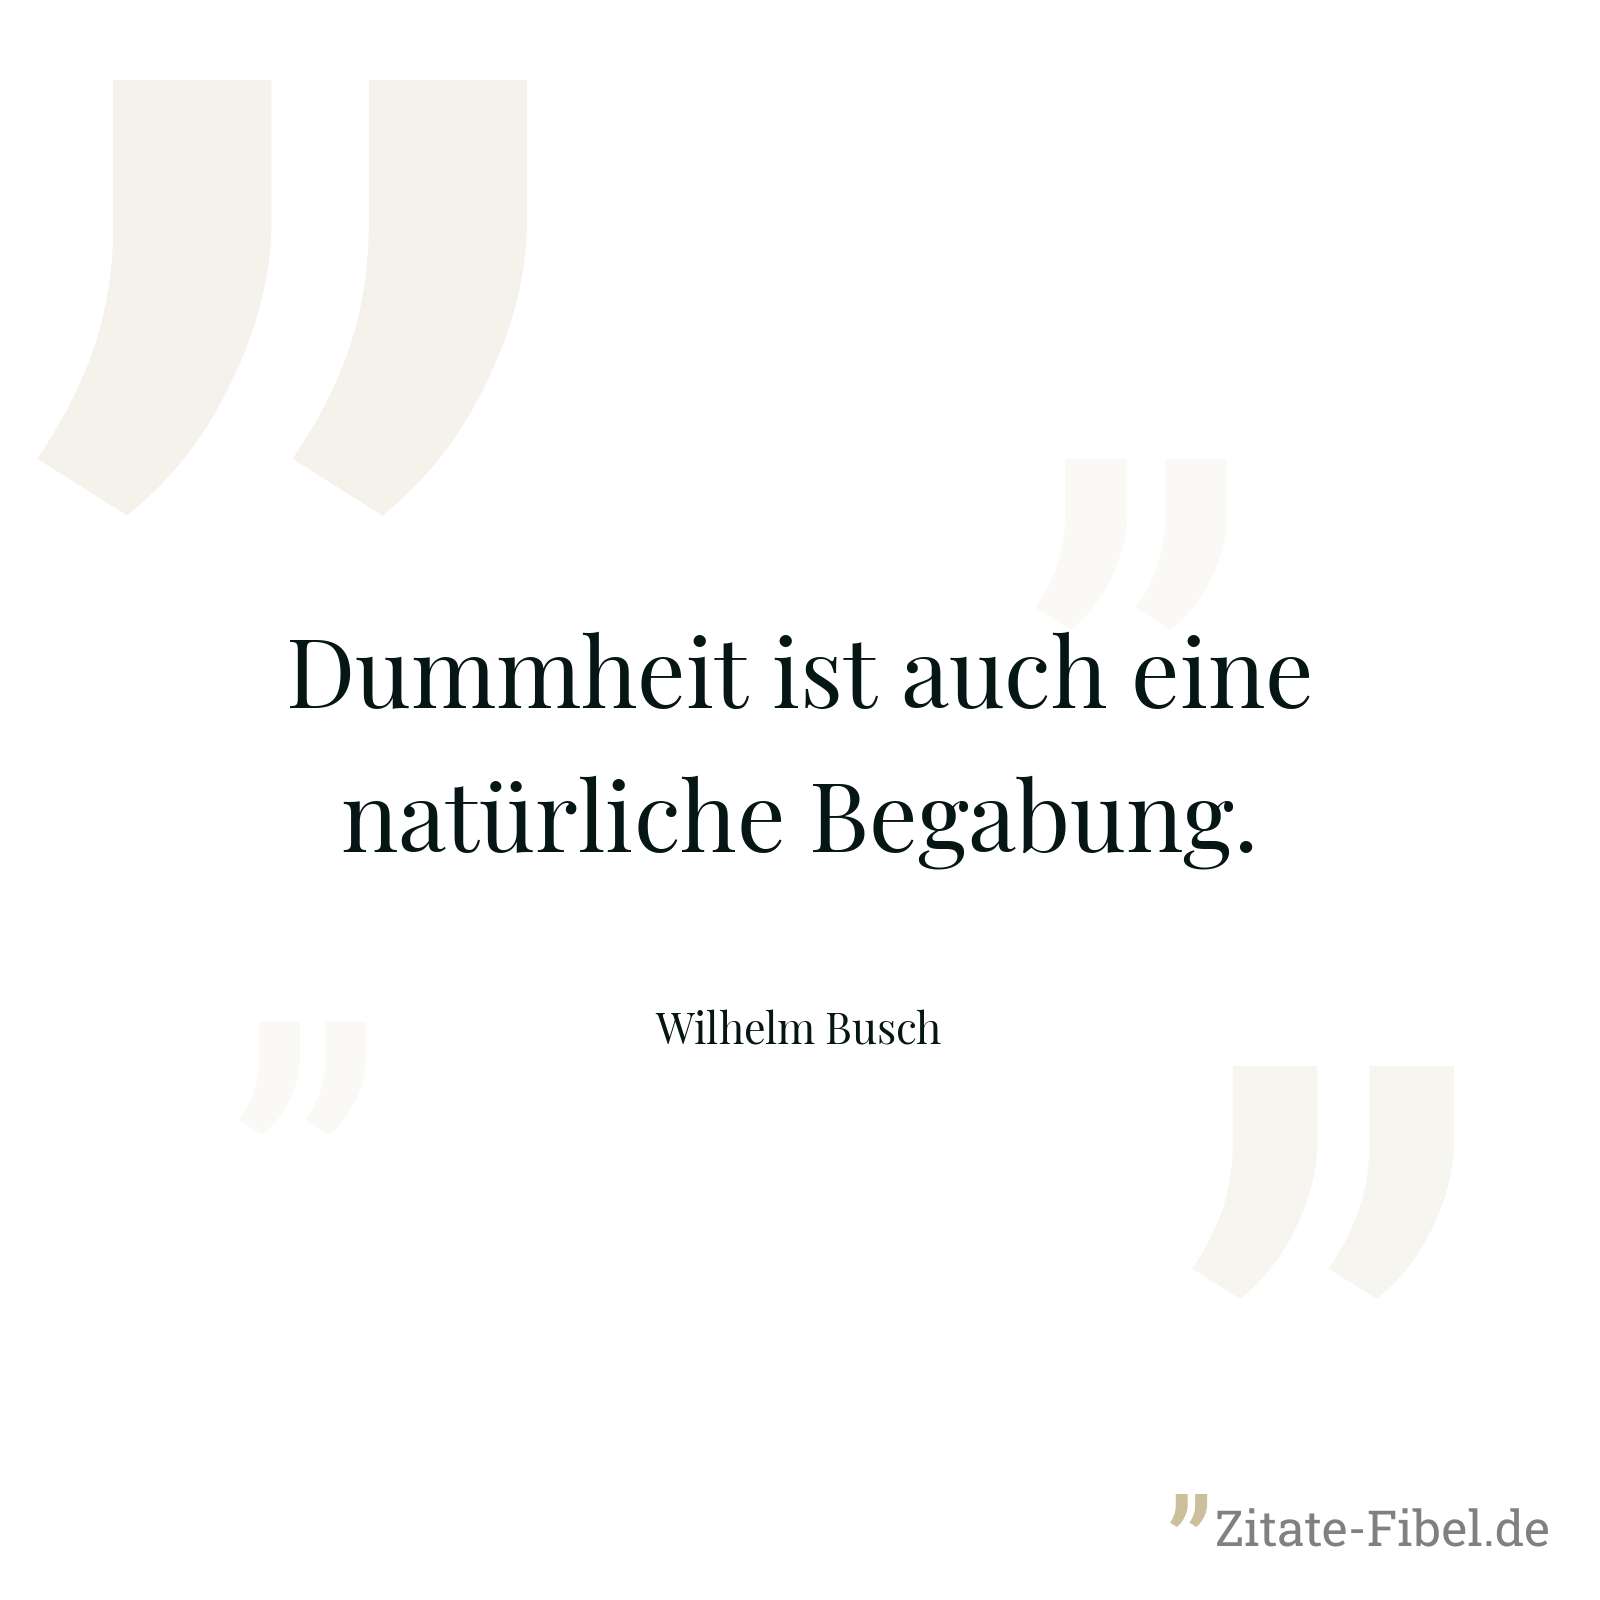 Dummheit ist auch eine natürliche Begabung. - Wilhelm Busch